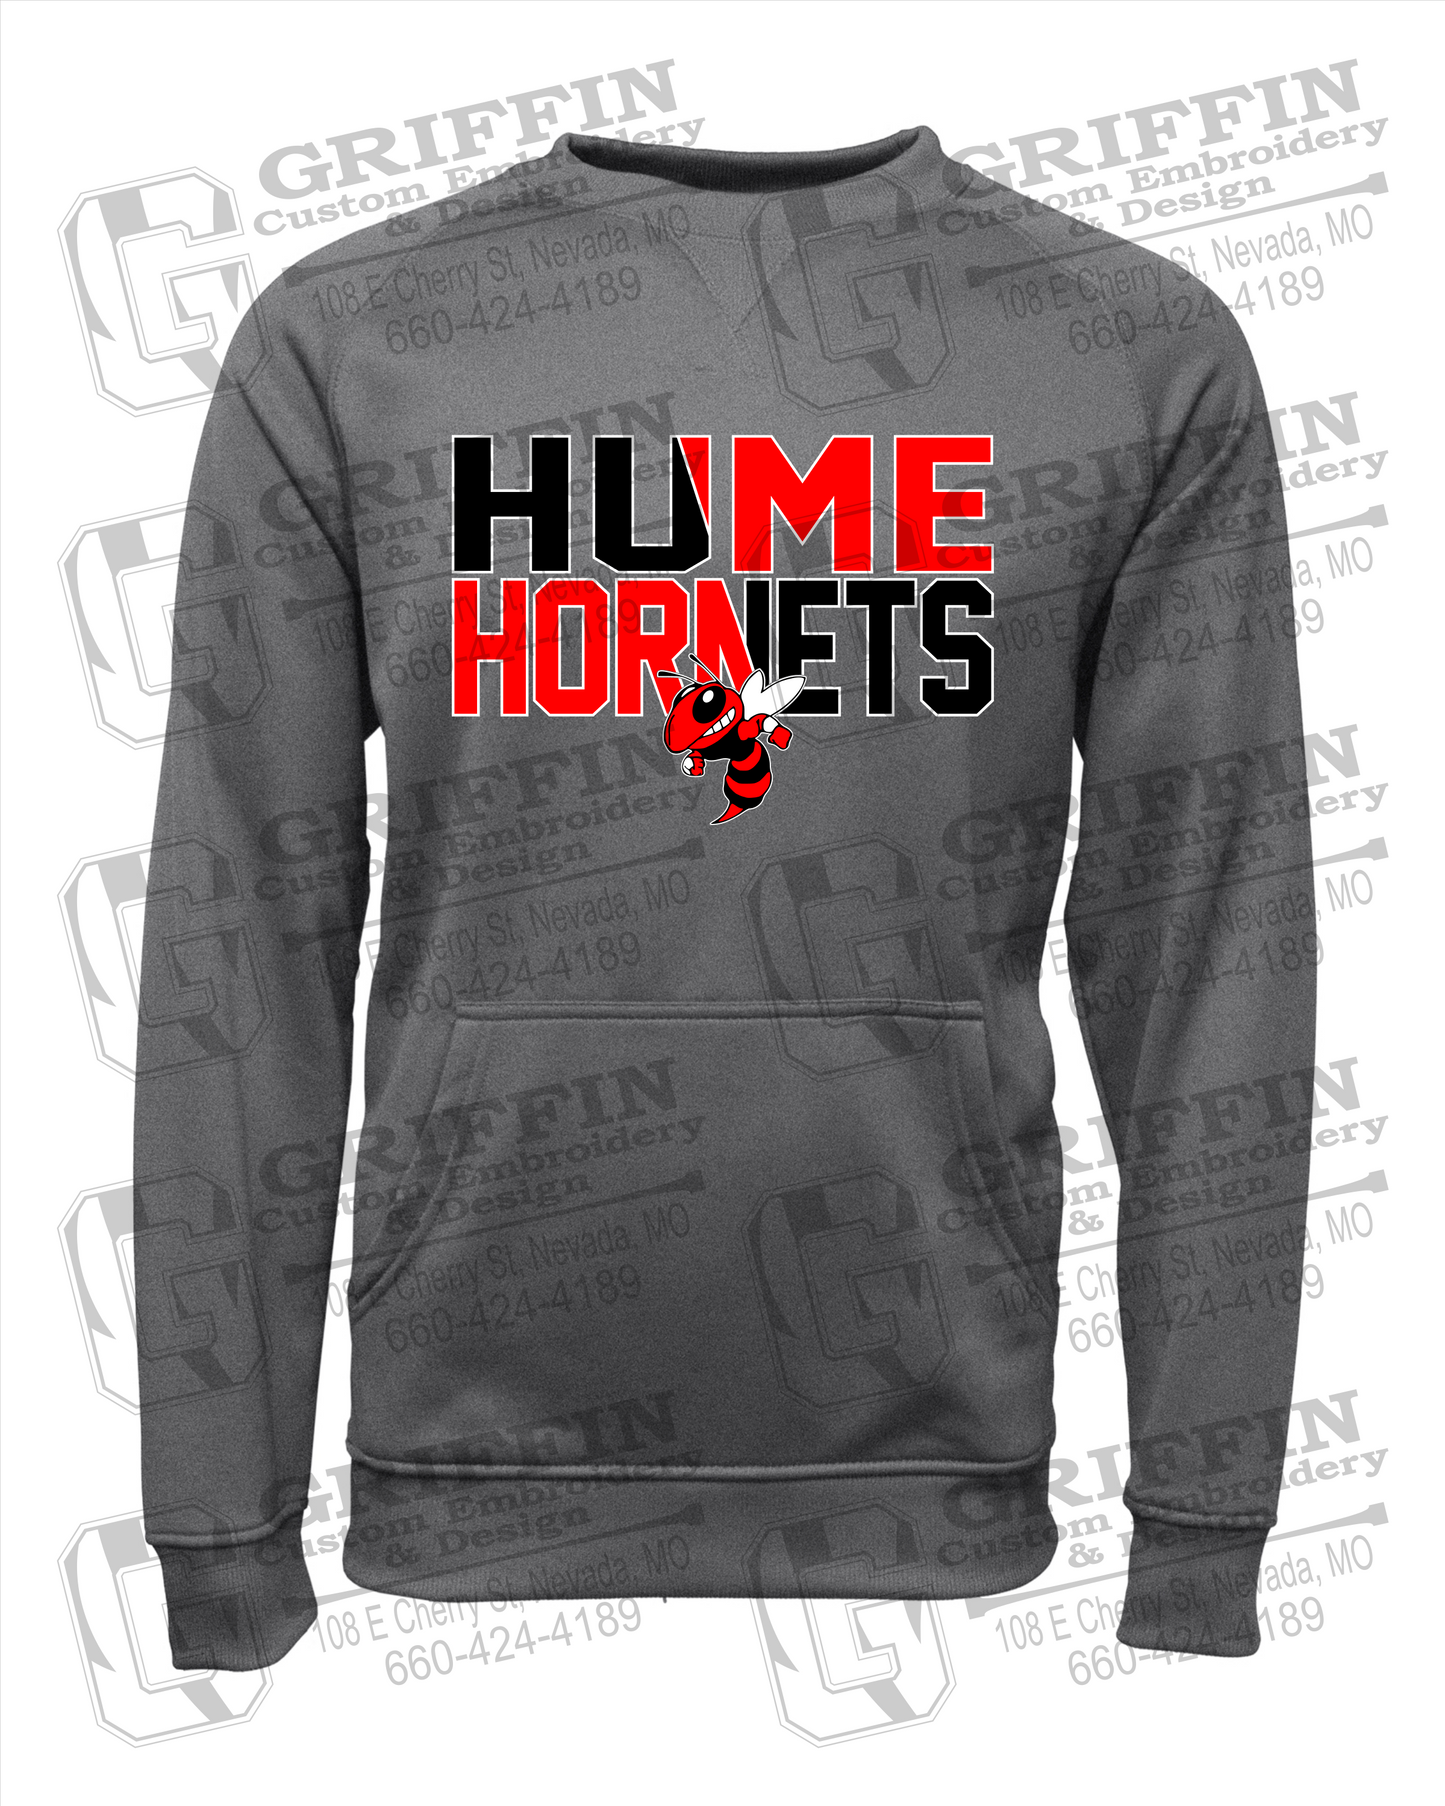 Hume Hornets 23-C Sweatshirt